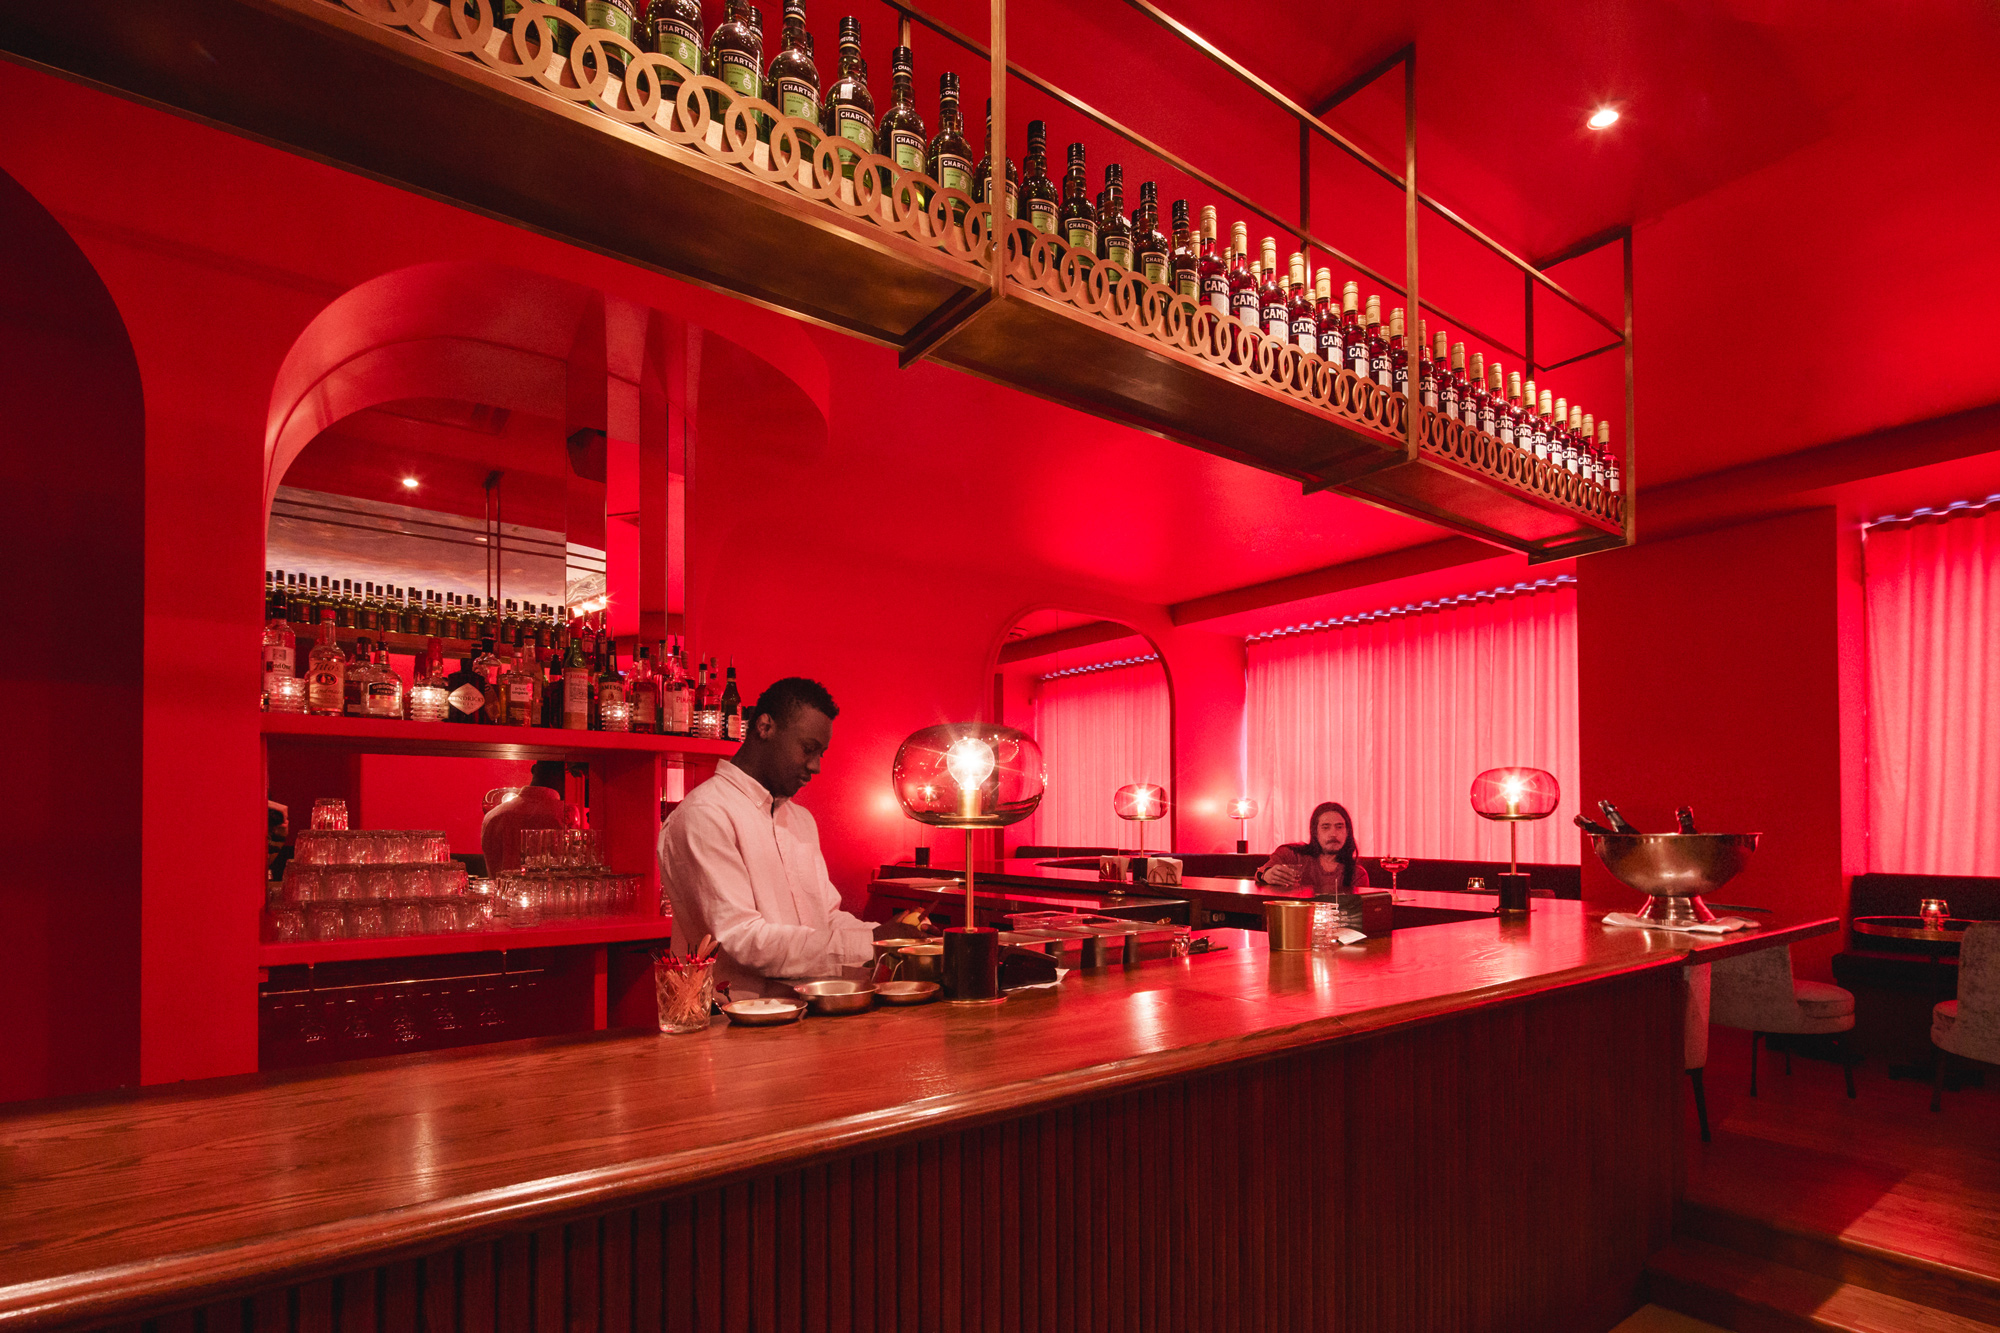   &lt;&lt;&lt;&lt;&lt;  BACK  Bar Vol de nuit, par  Alain Carle Architecte  © Raphaël Thibodeau 